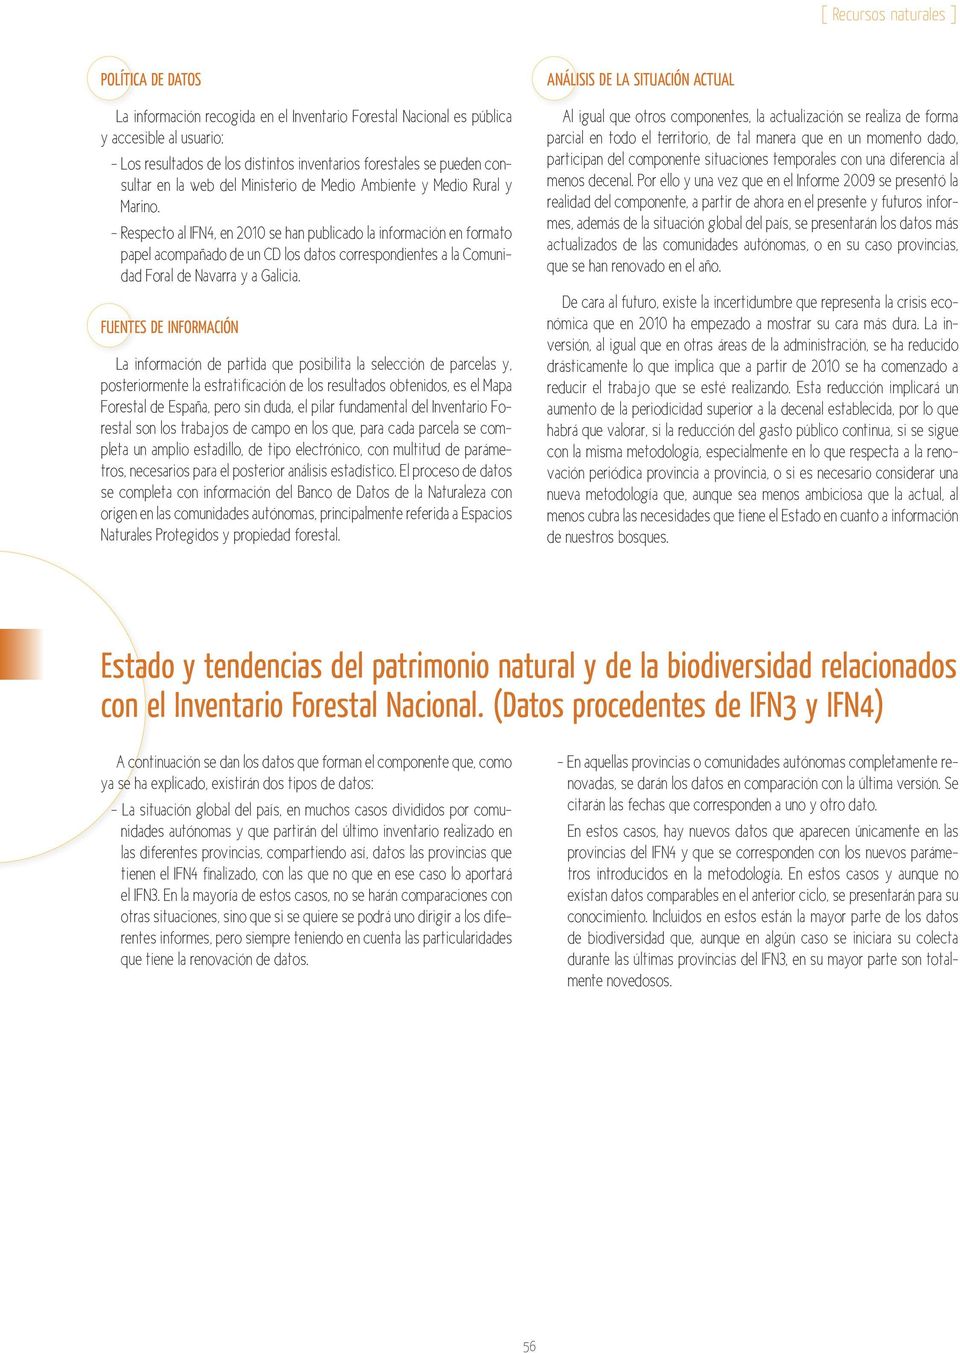 - Respecto al IFN4, en 2010 se han publicado la información en formato papel acompañado de un CD los datos correspondientes a la Comunidad Foral de Navarra y a Galicia.